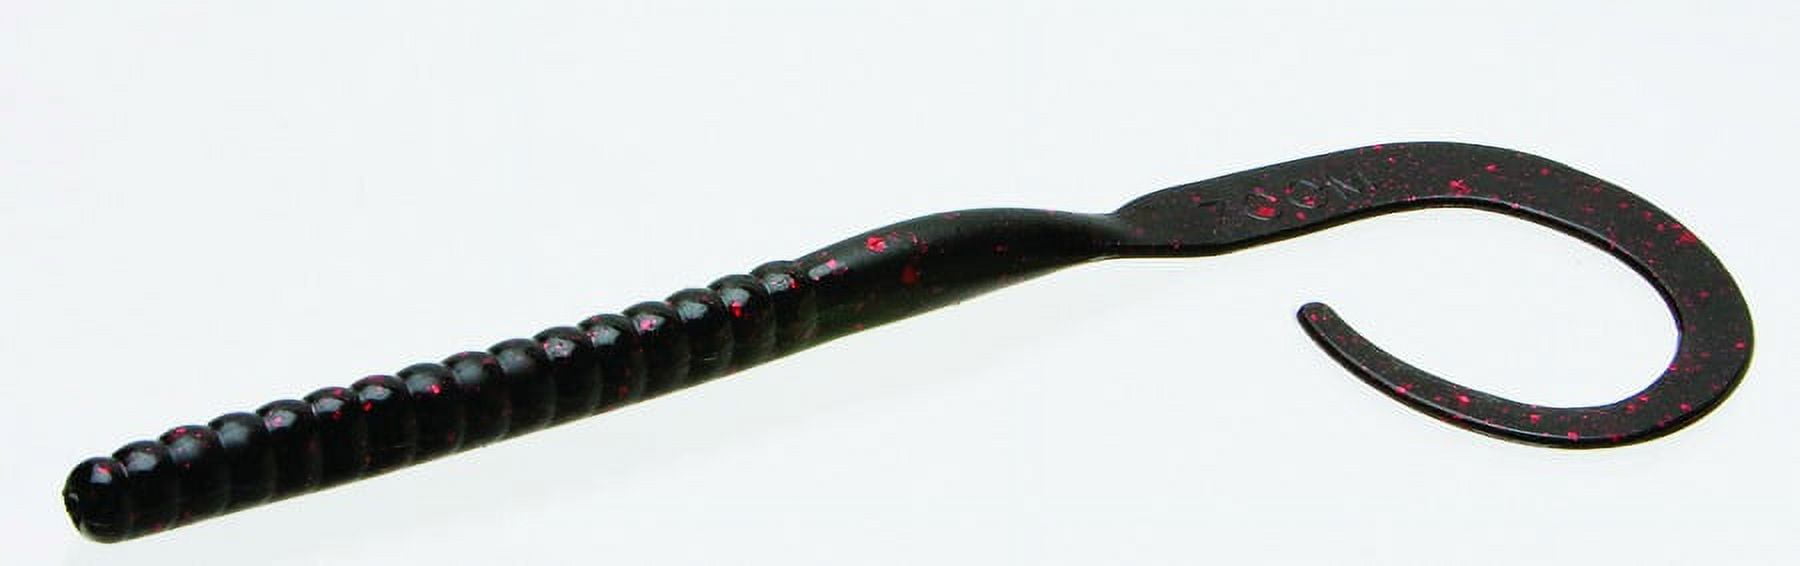 Zoom Ol' Monster Worm Freshwater Fishing Soft Bait, Black & Red Glitter, 10  1/2, 9-pack 